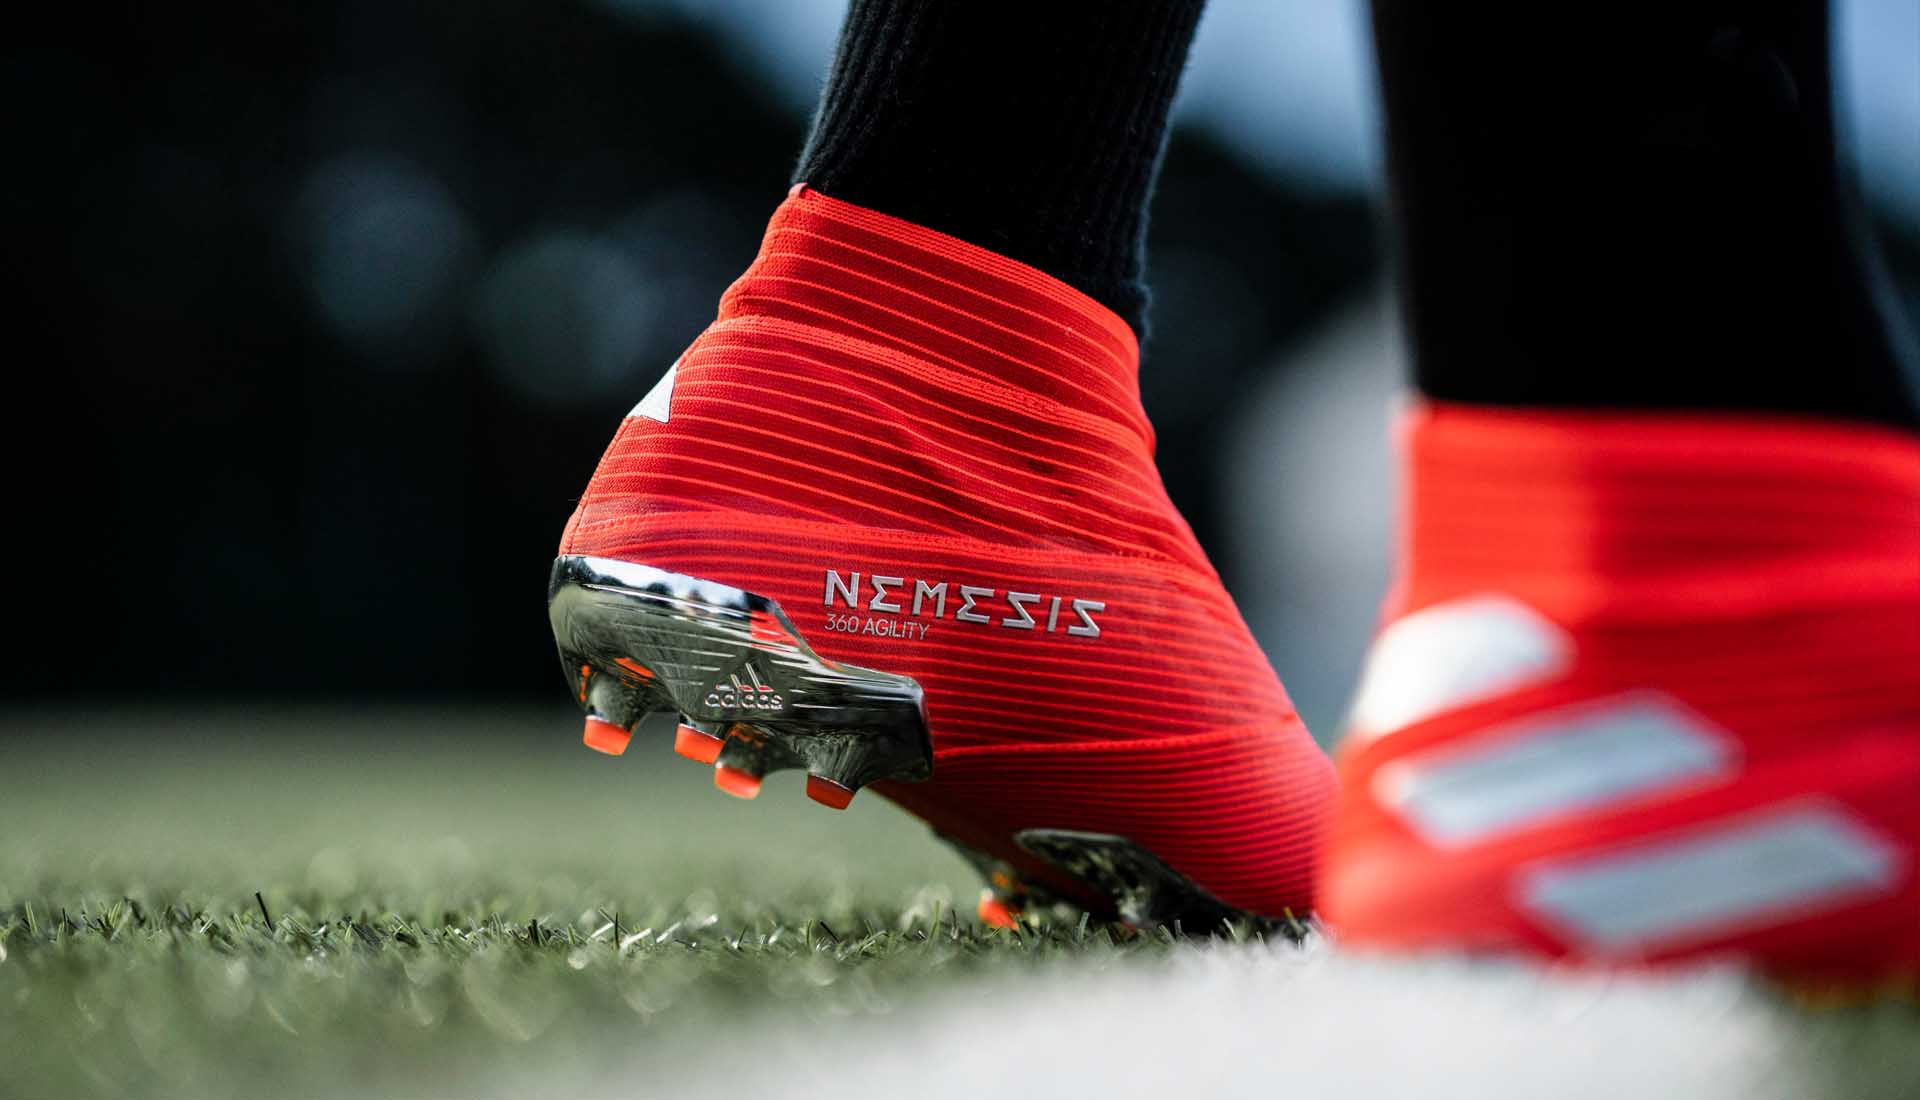 Giày Adidas Nemeziz 19+ rất ôm chân và chắc chân được sử dụng để thi đấu chuyên nghiệp